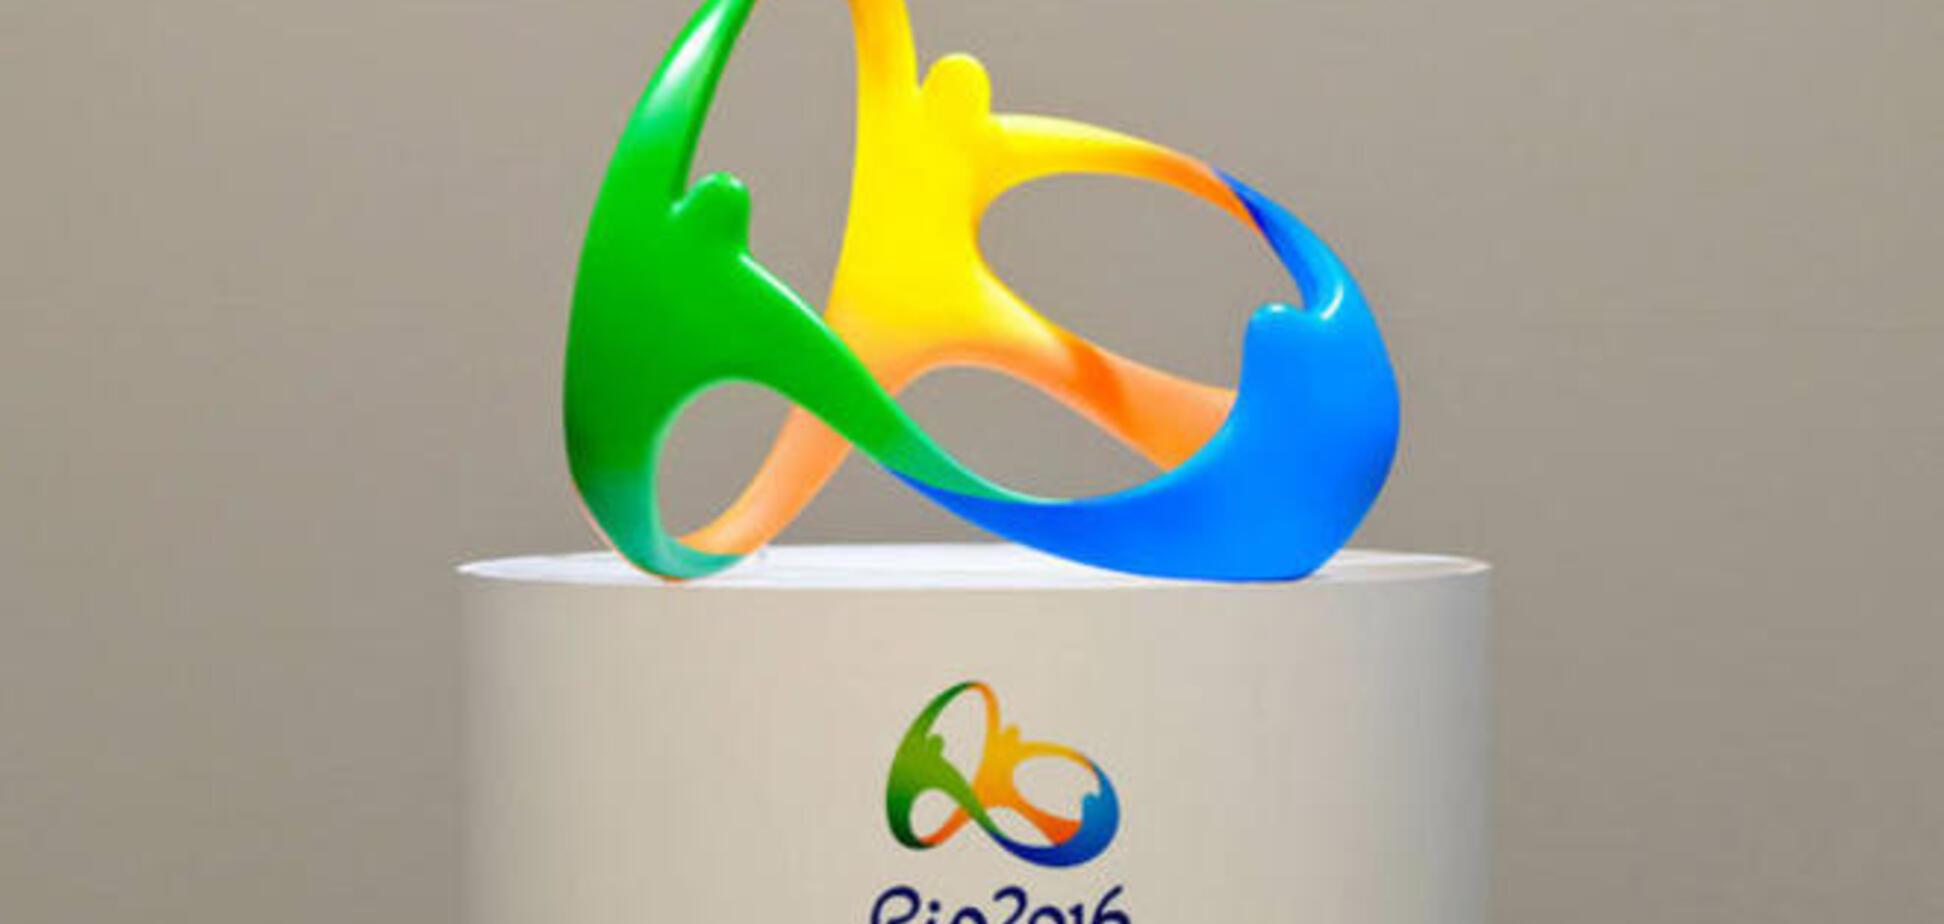 Олимпиаду-2016 могут перенести из Рио-де-Жанейро в Лондон